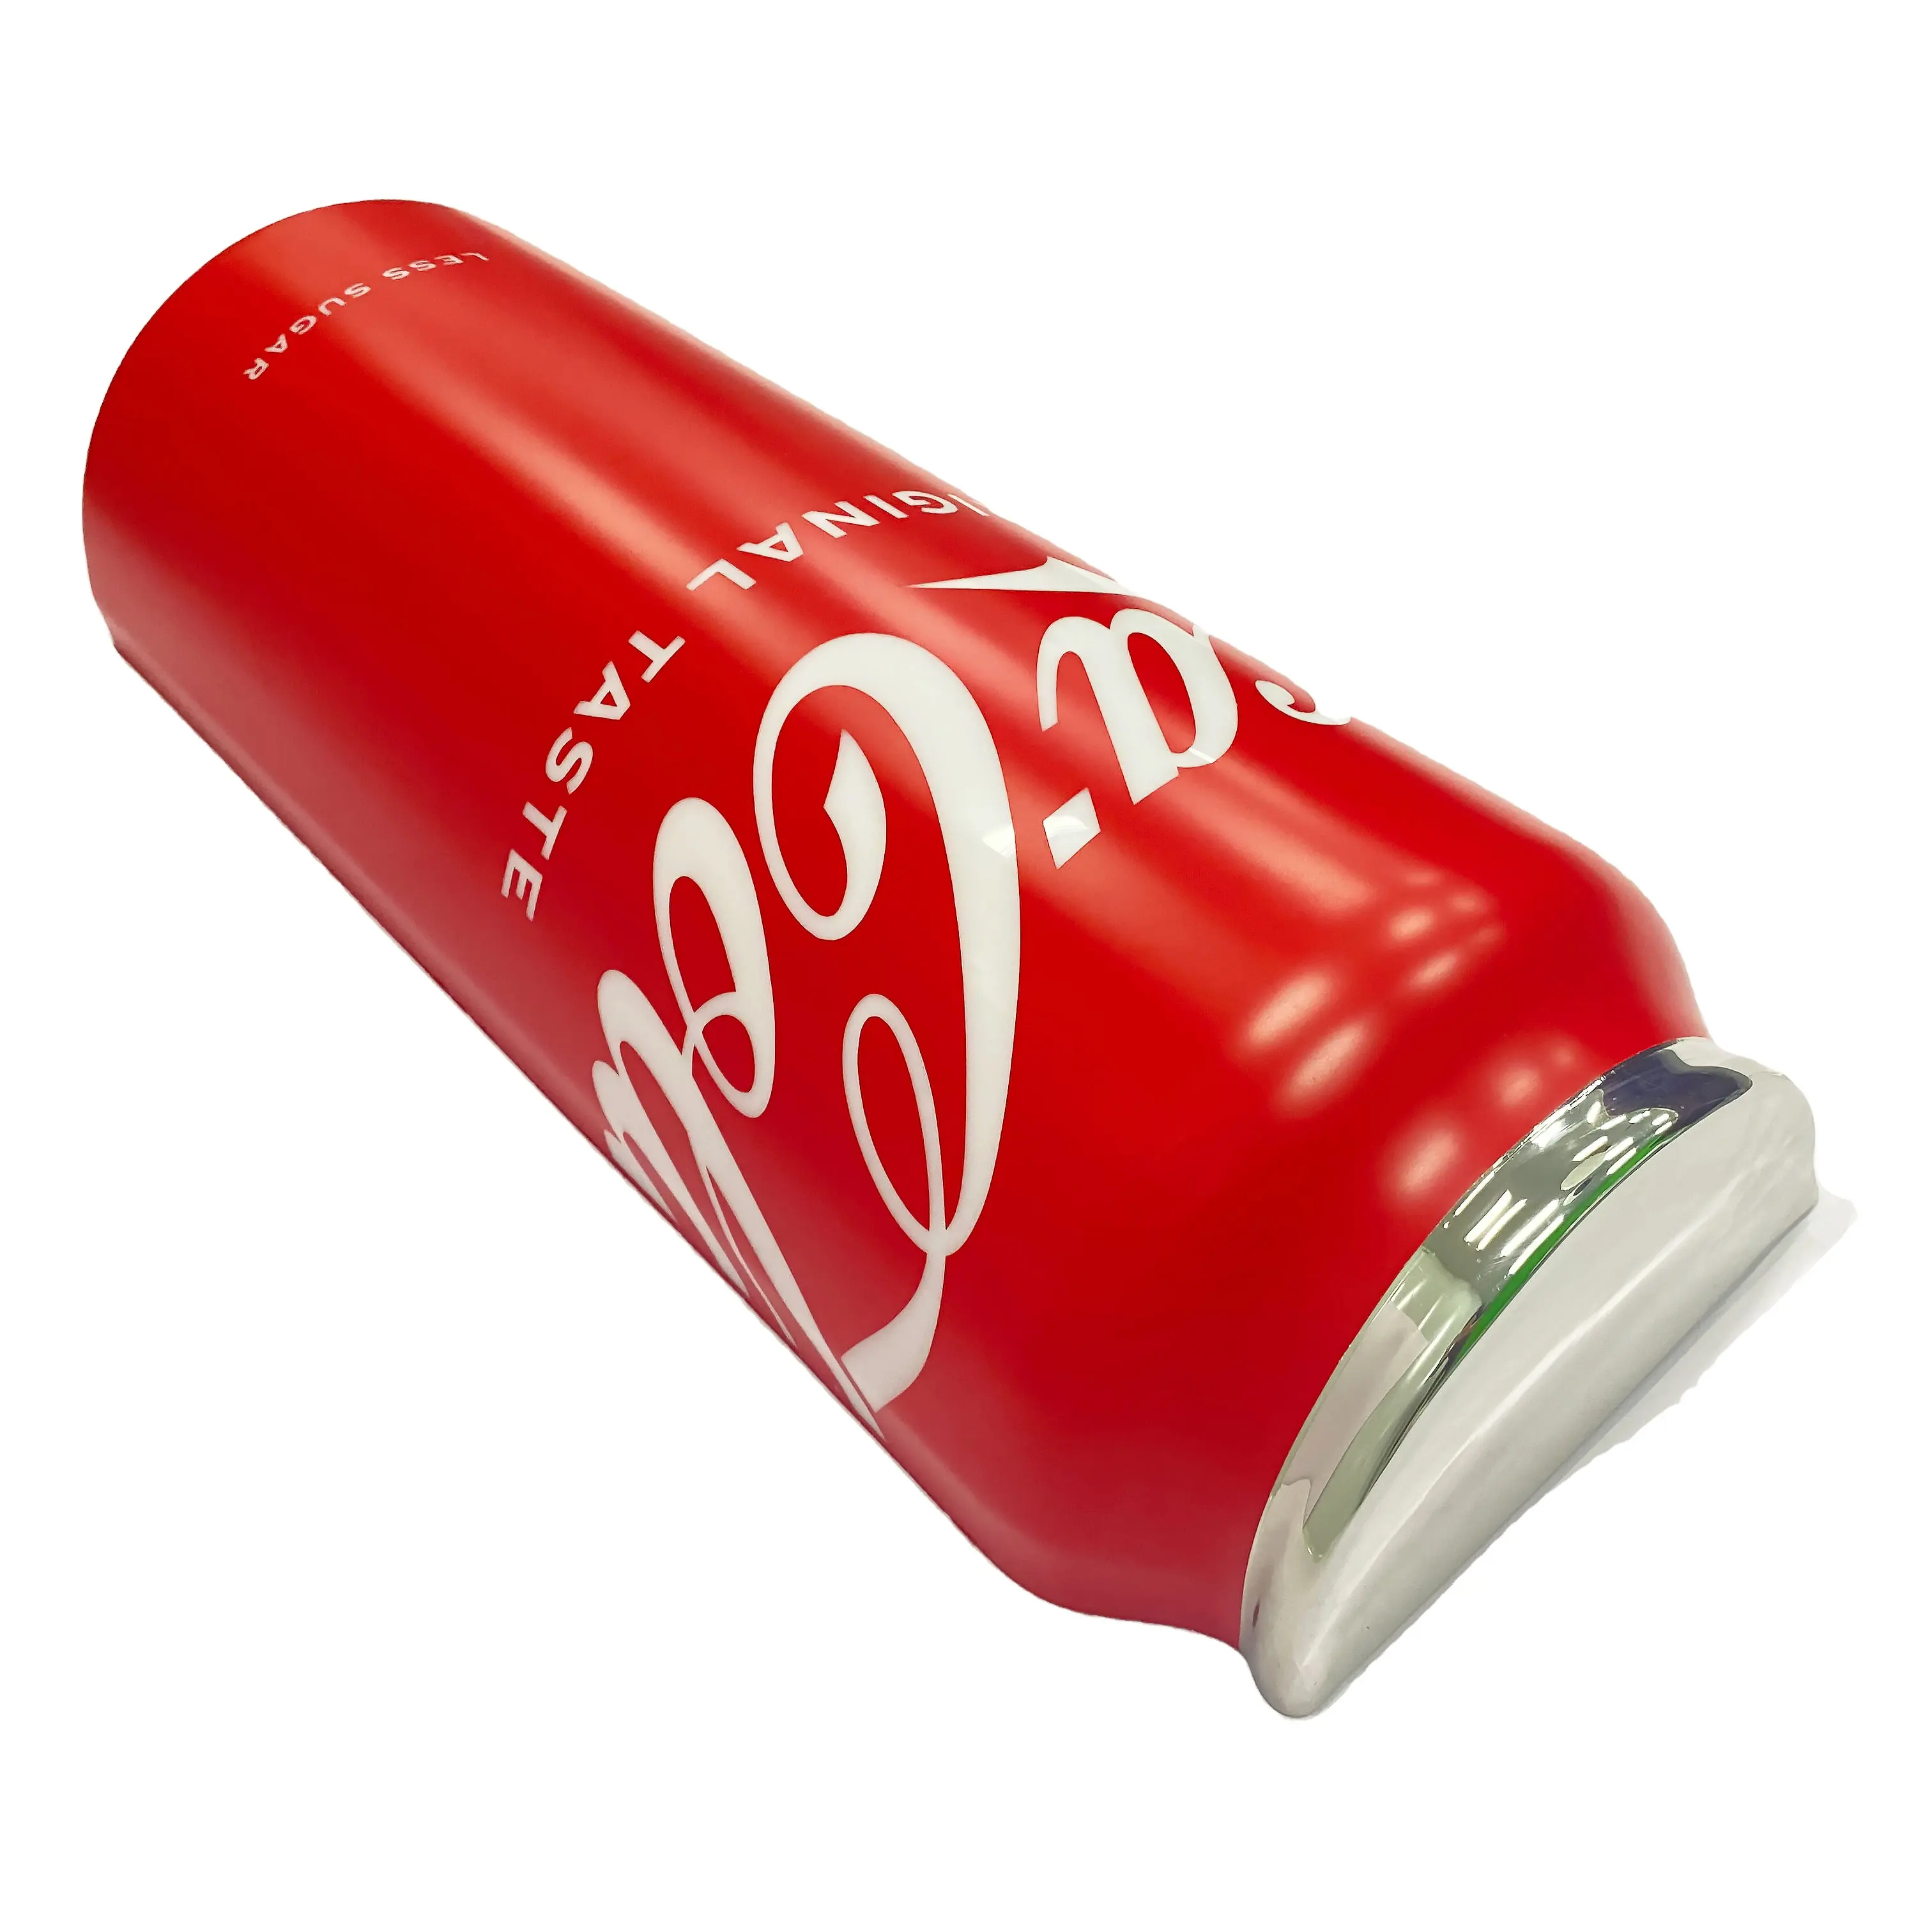 Arabanın üstüne 3D Red Bull reklam ışığı, Pepsi Cola reklam ışığı resme göre özelleştirilebilir